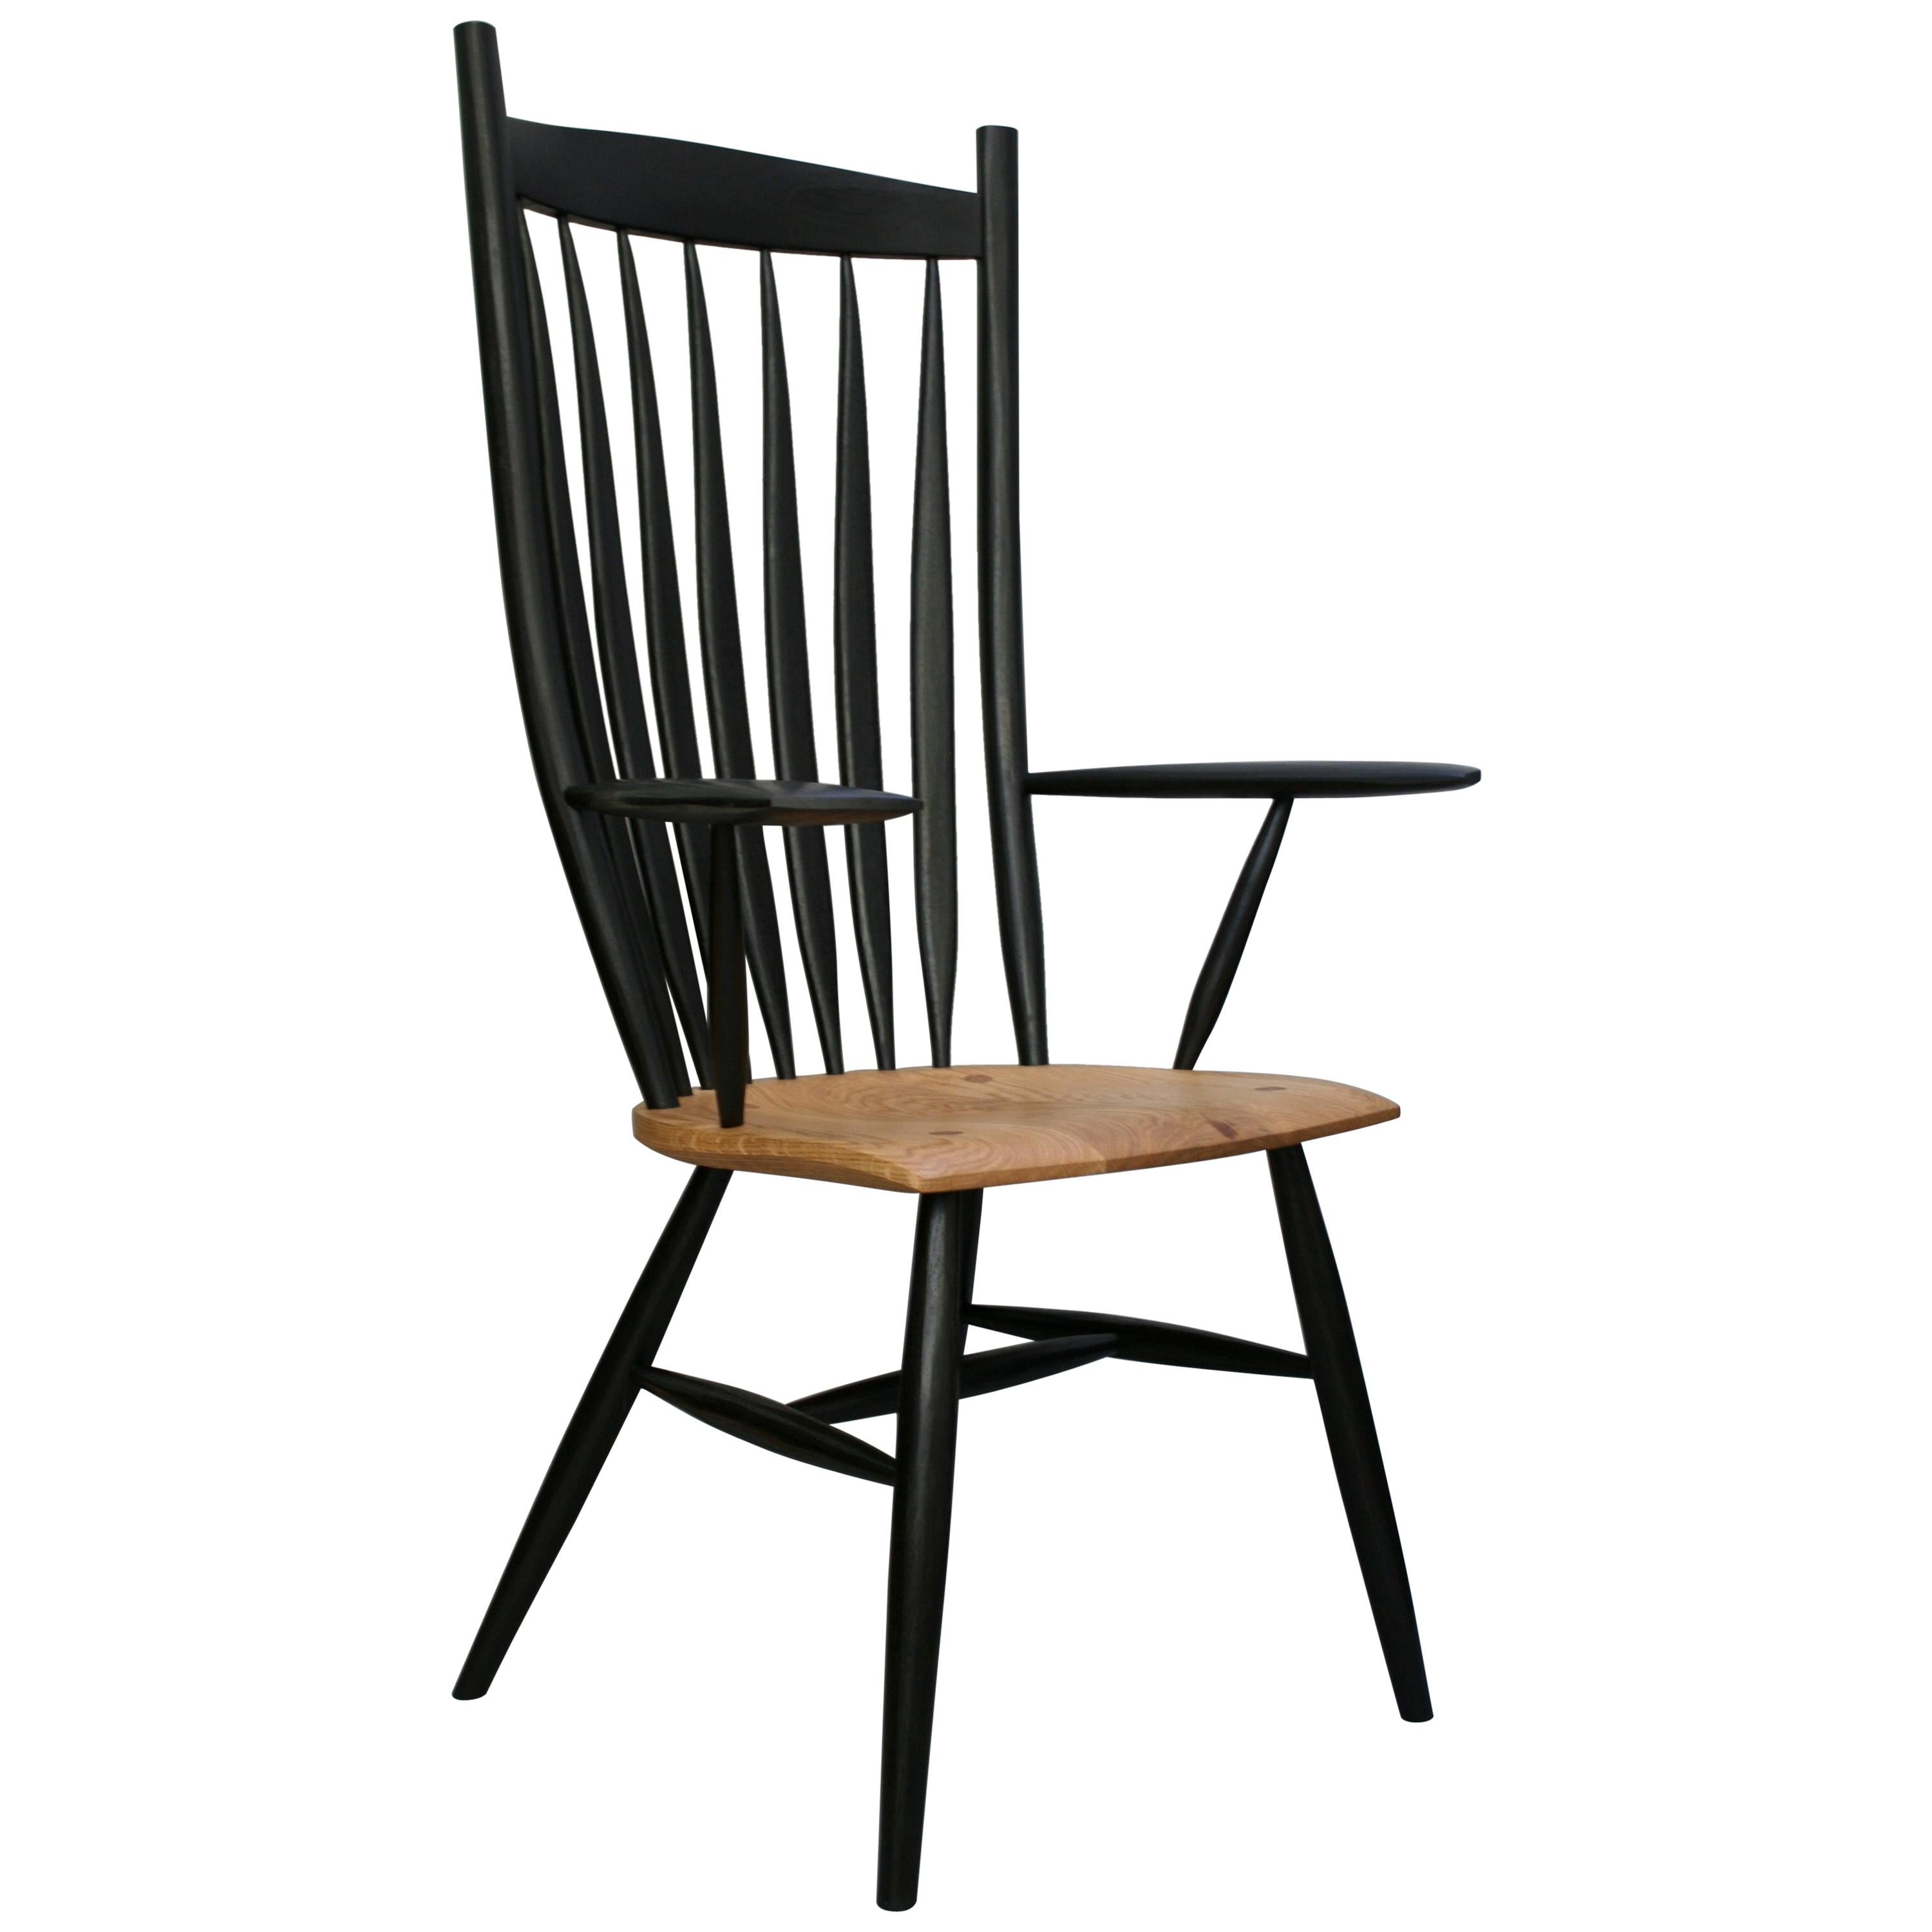 Ensemble de 10 chaises courbes fabriquées sur commande par l'ébéniste allemand Fabian Fischer (2 accoudoirs et 8 chaises latérales). (2 chaises à accoudoir et 8 chaises d'appoint) Fabriquées dans la tradition et la qualité de l'artisanat des studios